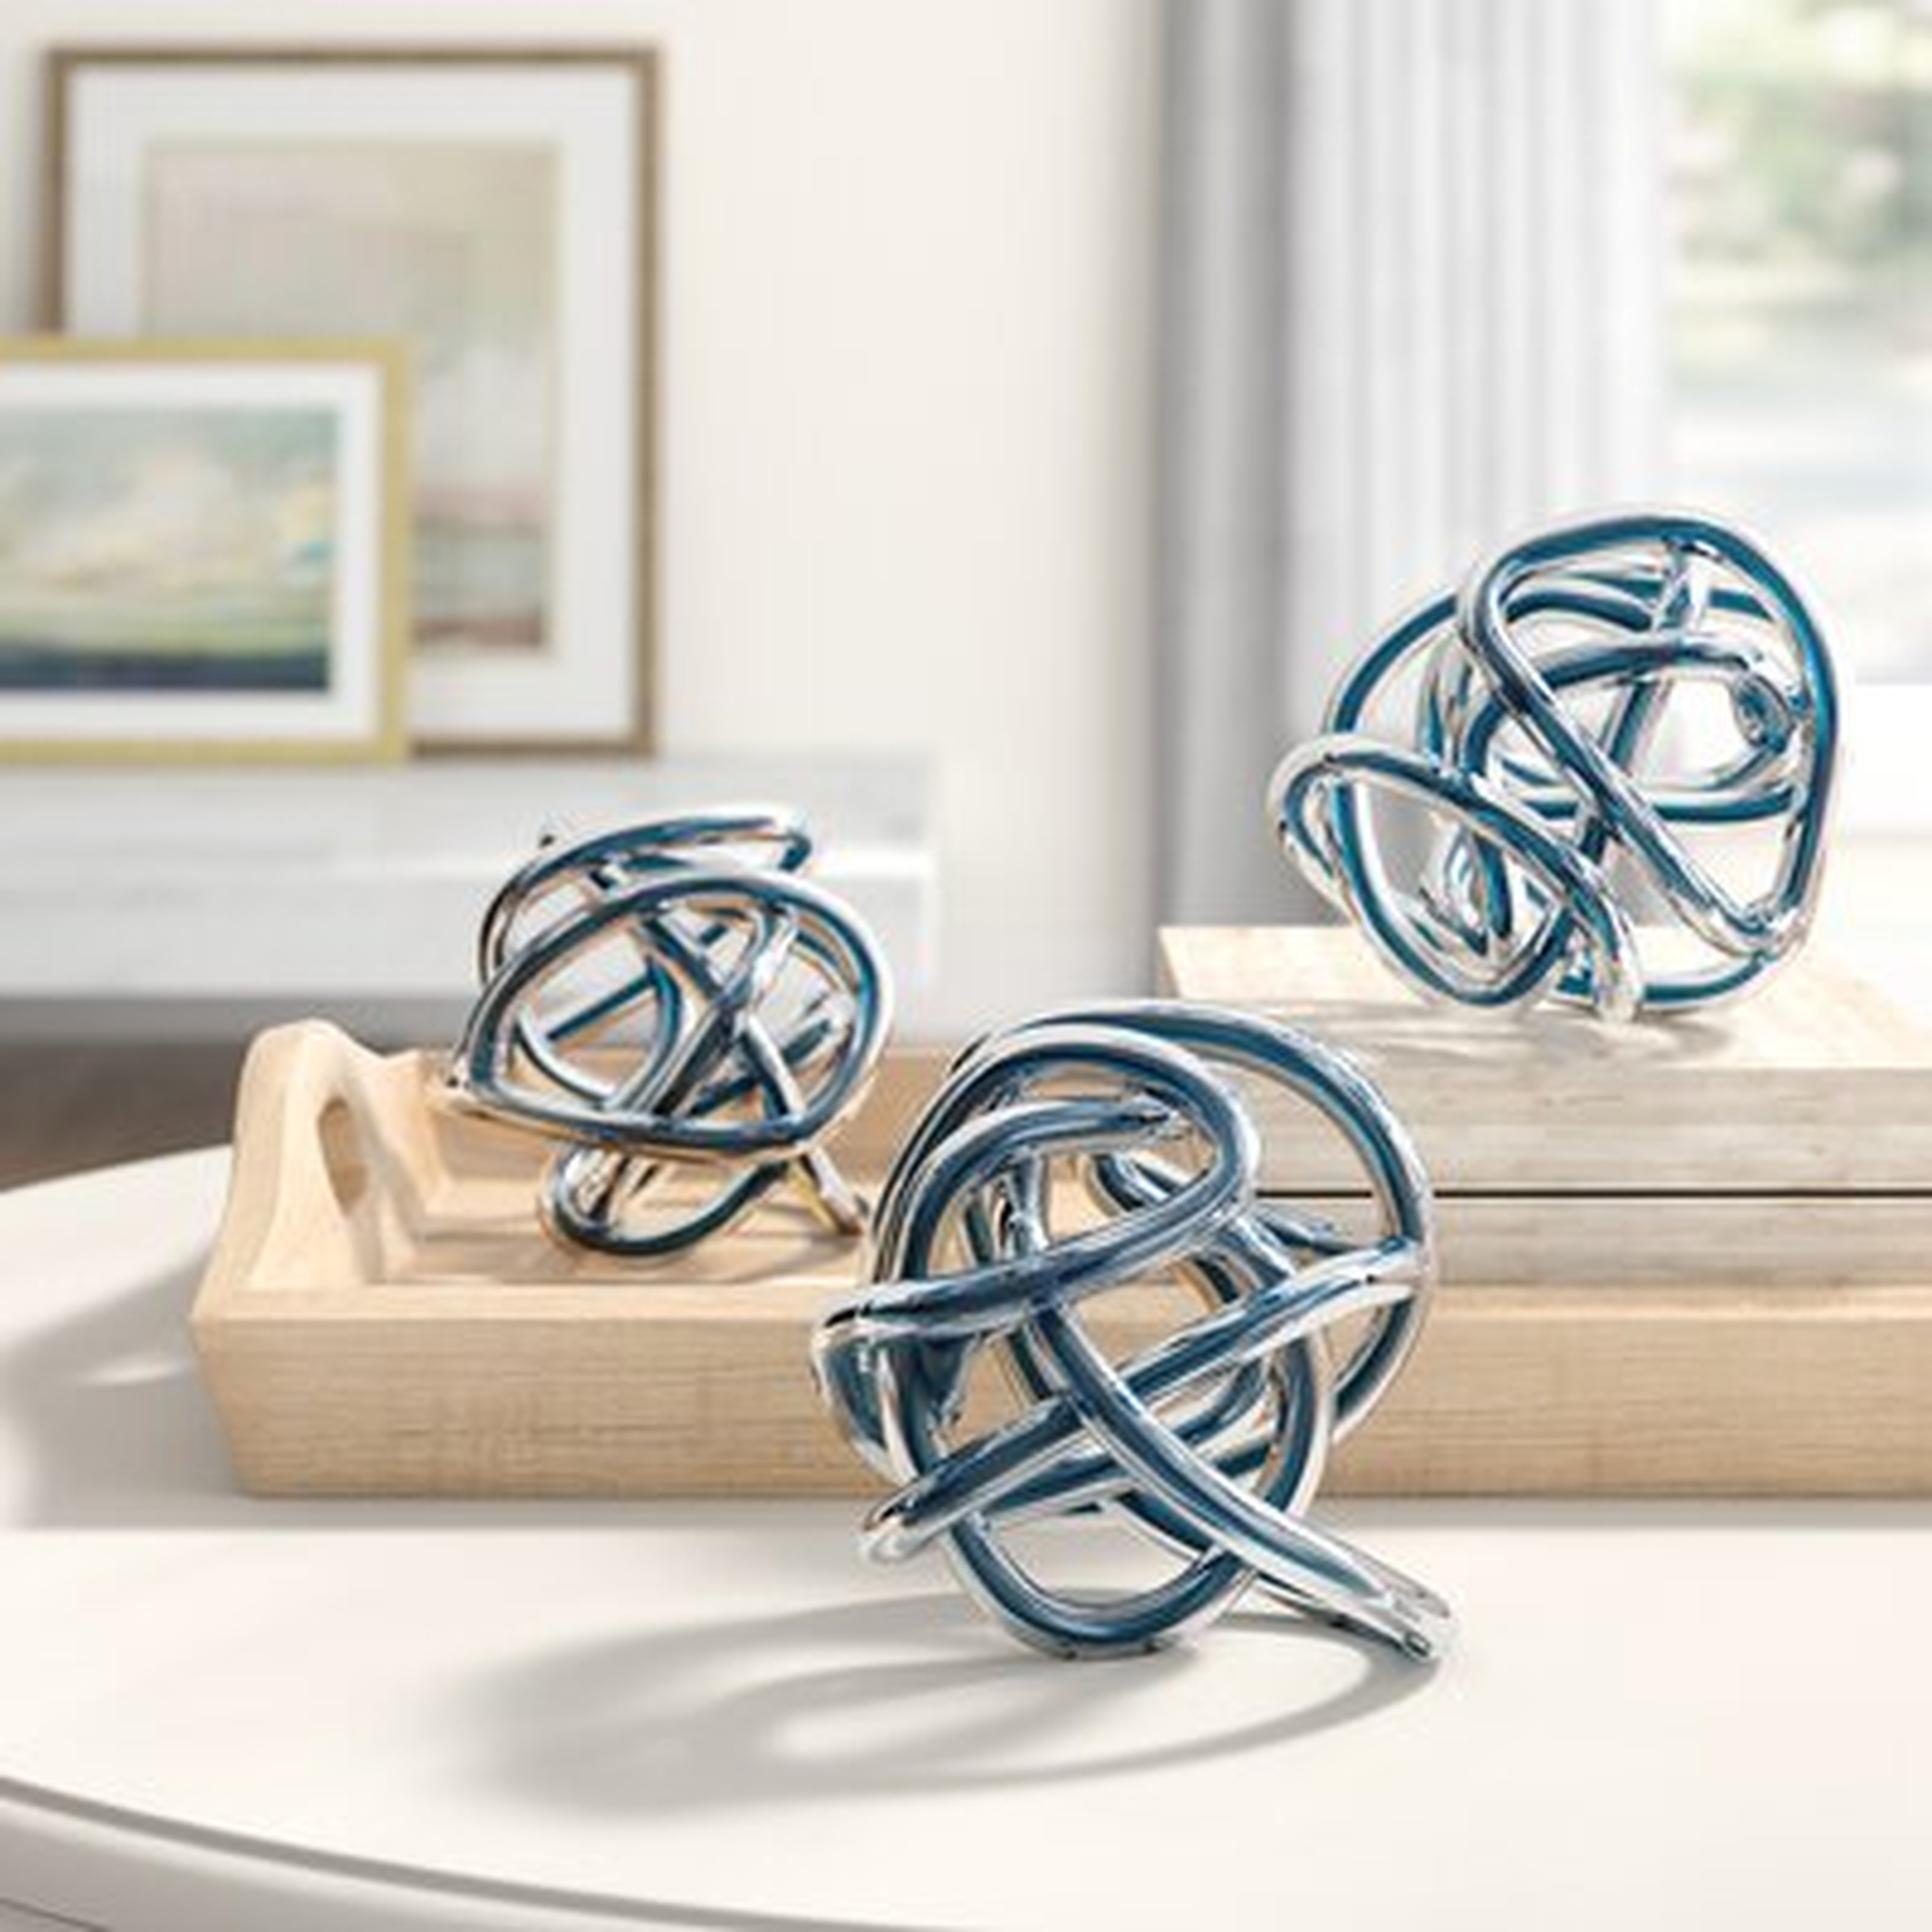 3 Piece Glass Knot Sculpture Set - Wayfair